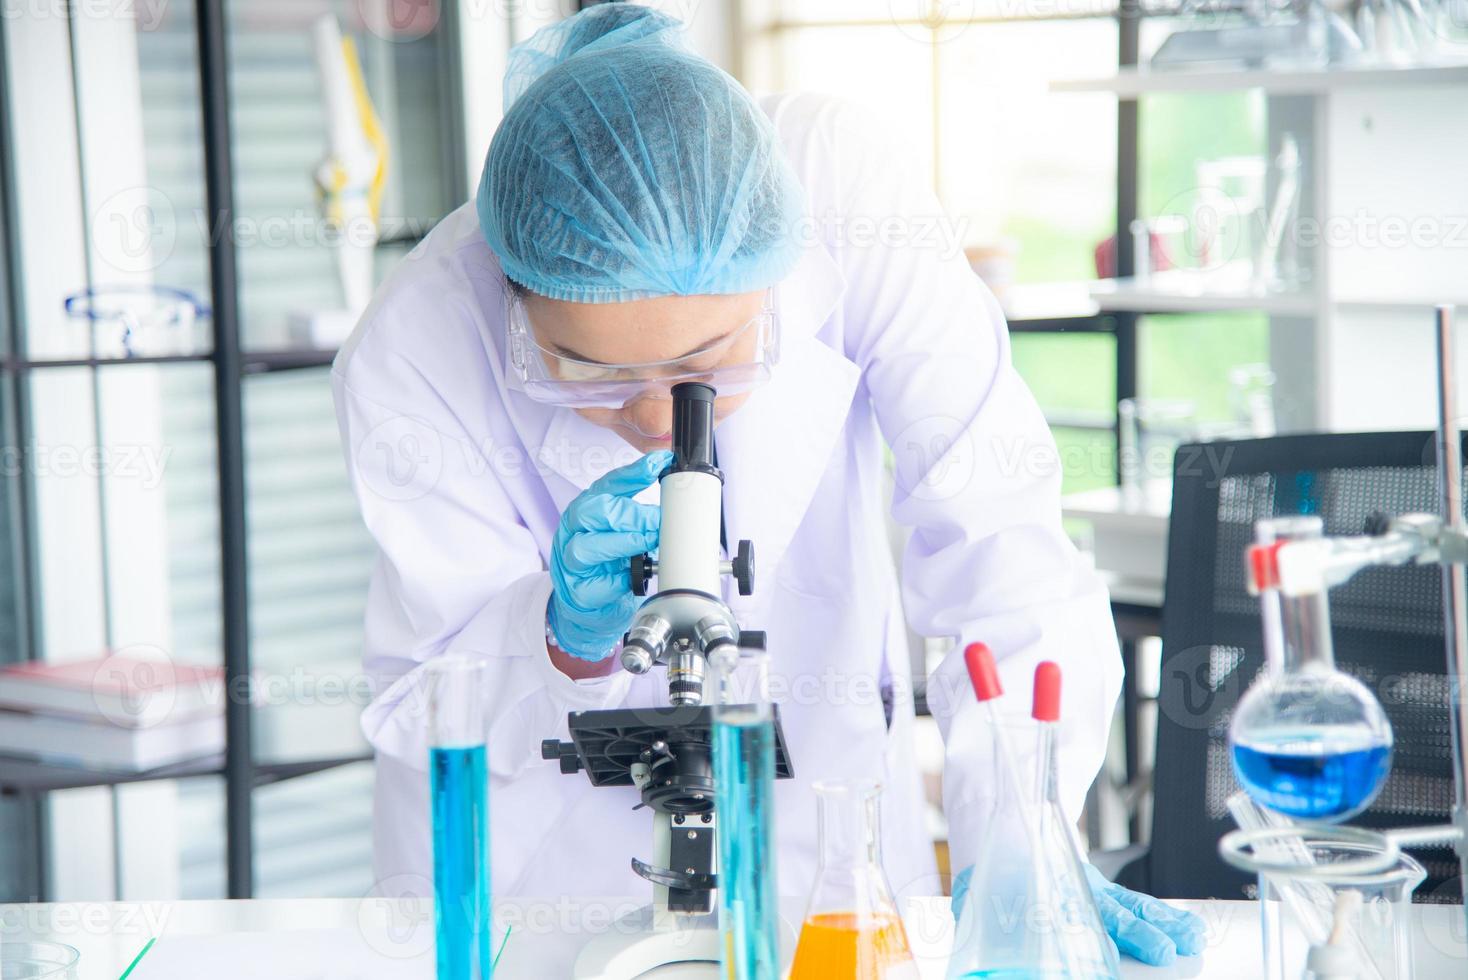 mujer asiática científica, investigadora, técnica o estudiante realizó investigaciones o experimentos utilizando un microscopio que es un equipo científico en un laboratorio médico, químico o biológico foto